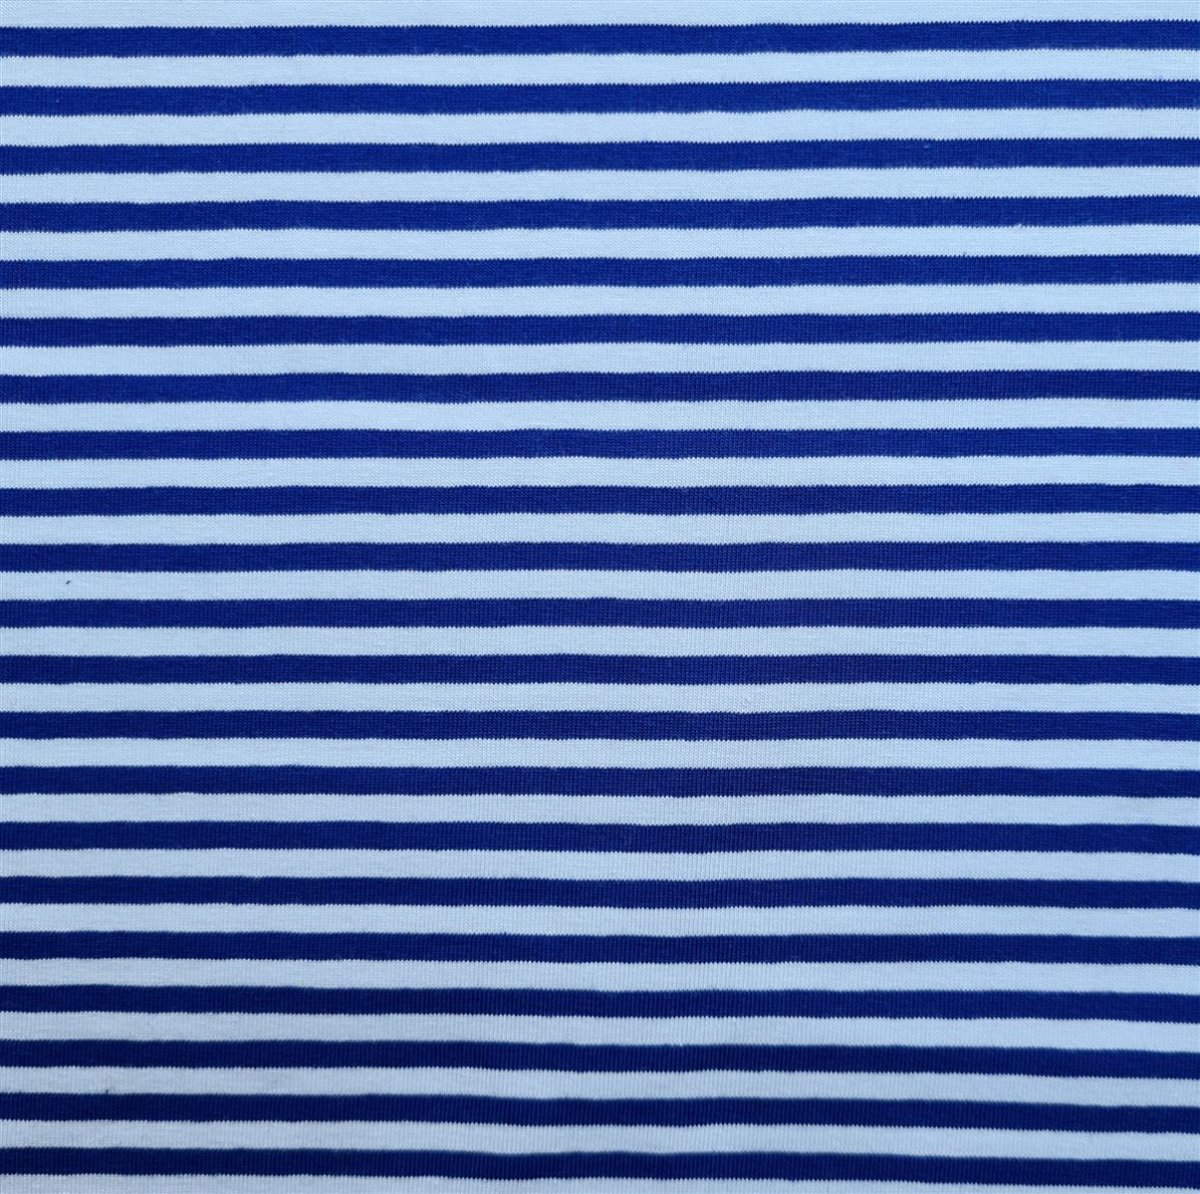 Jeansblau-Weiß Streifen